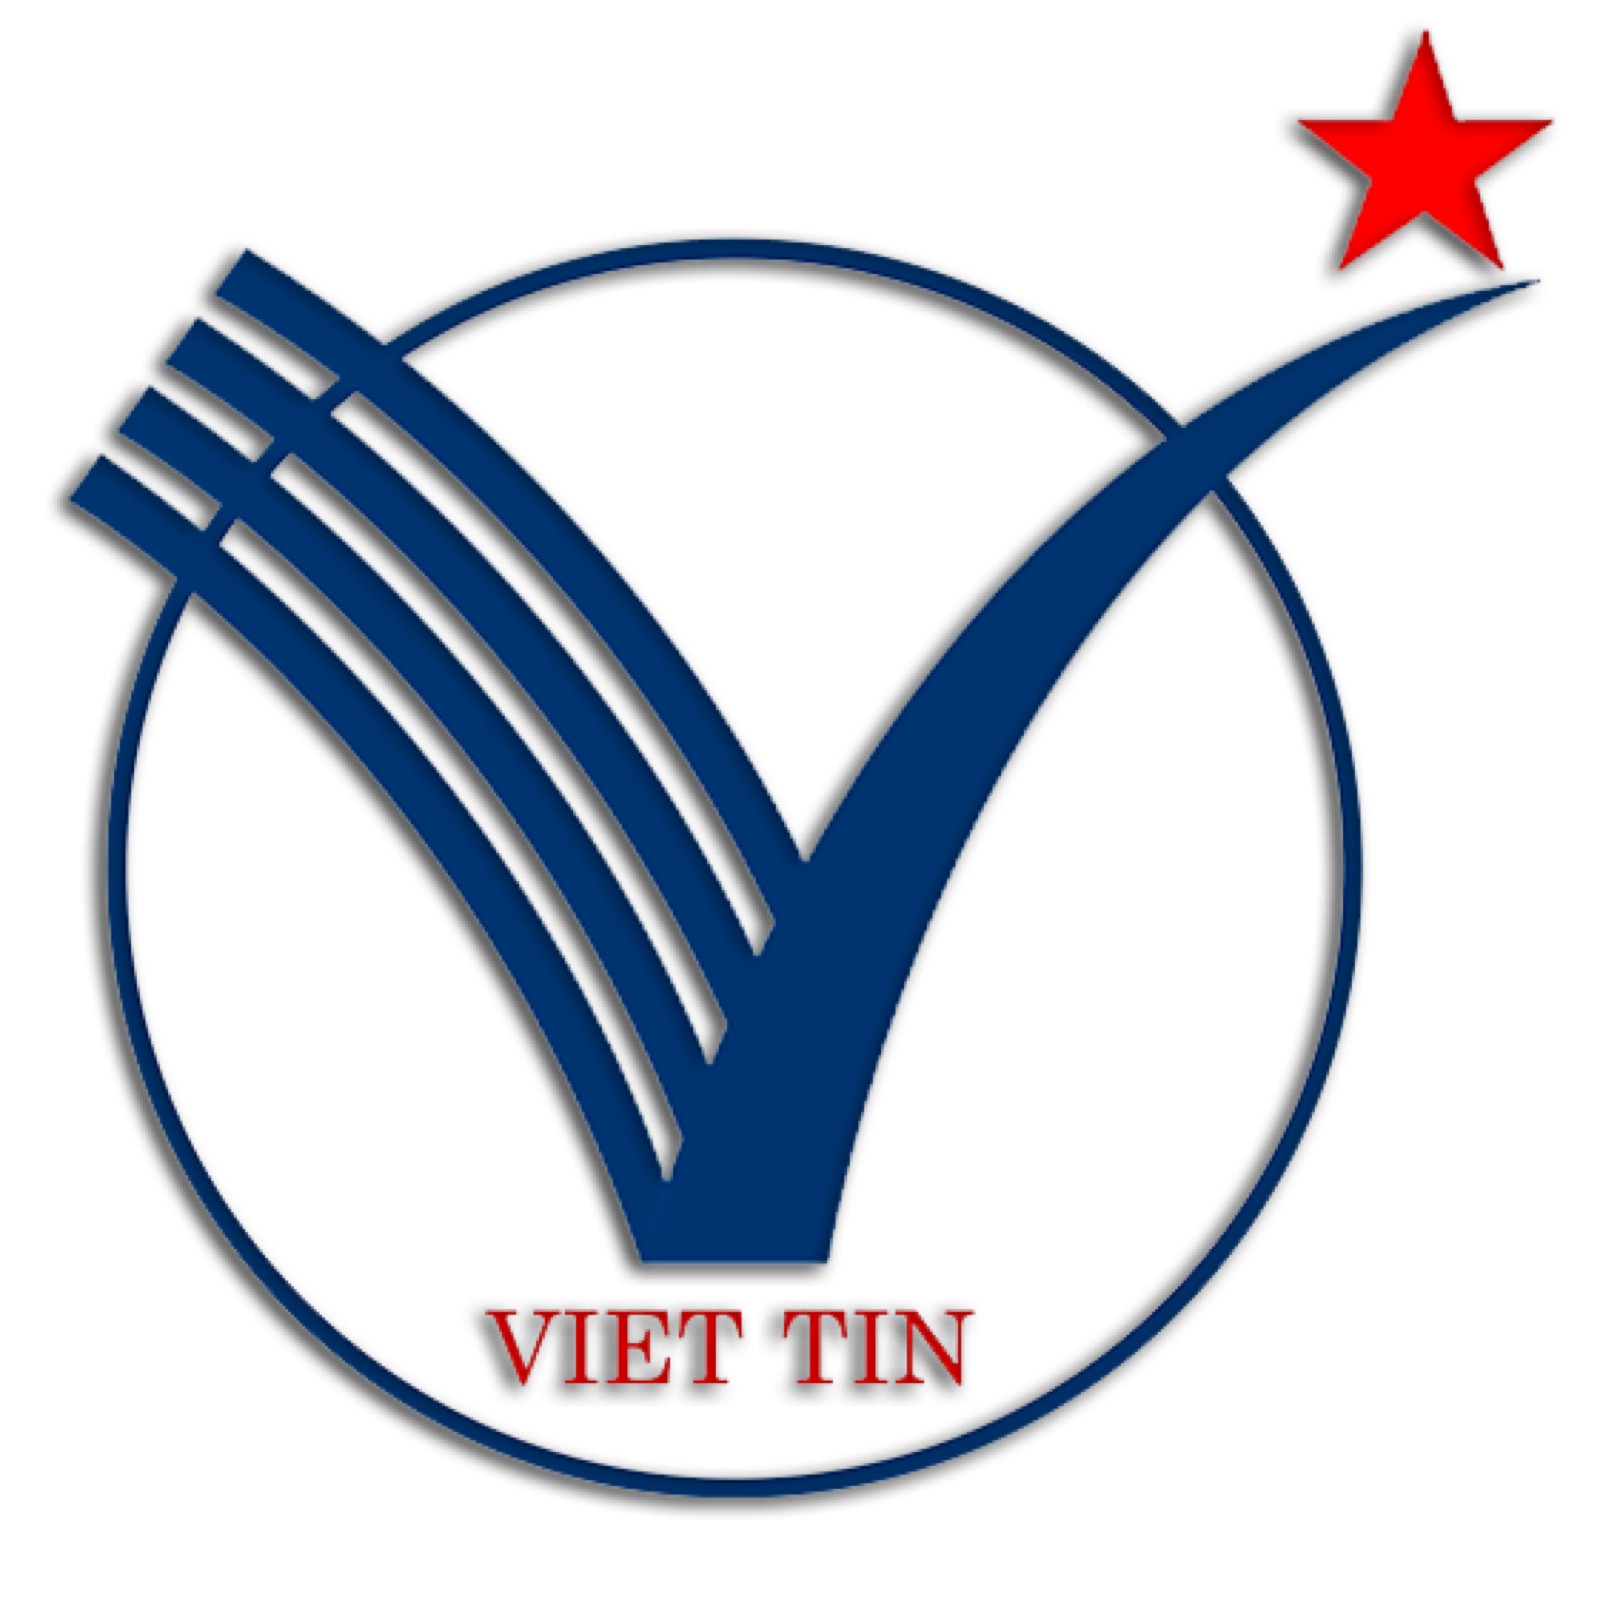 Những địa chỉ Kính Mắt Việt Tín tại Lai Xá Hà Nội có gì đặc biệt?